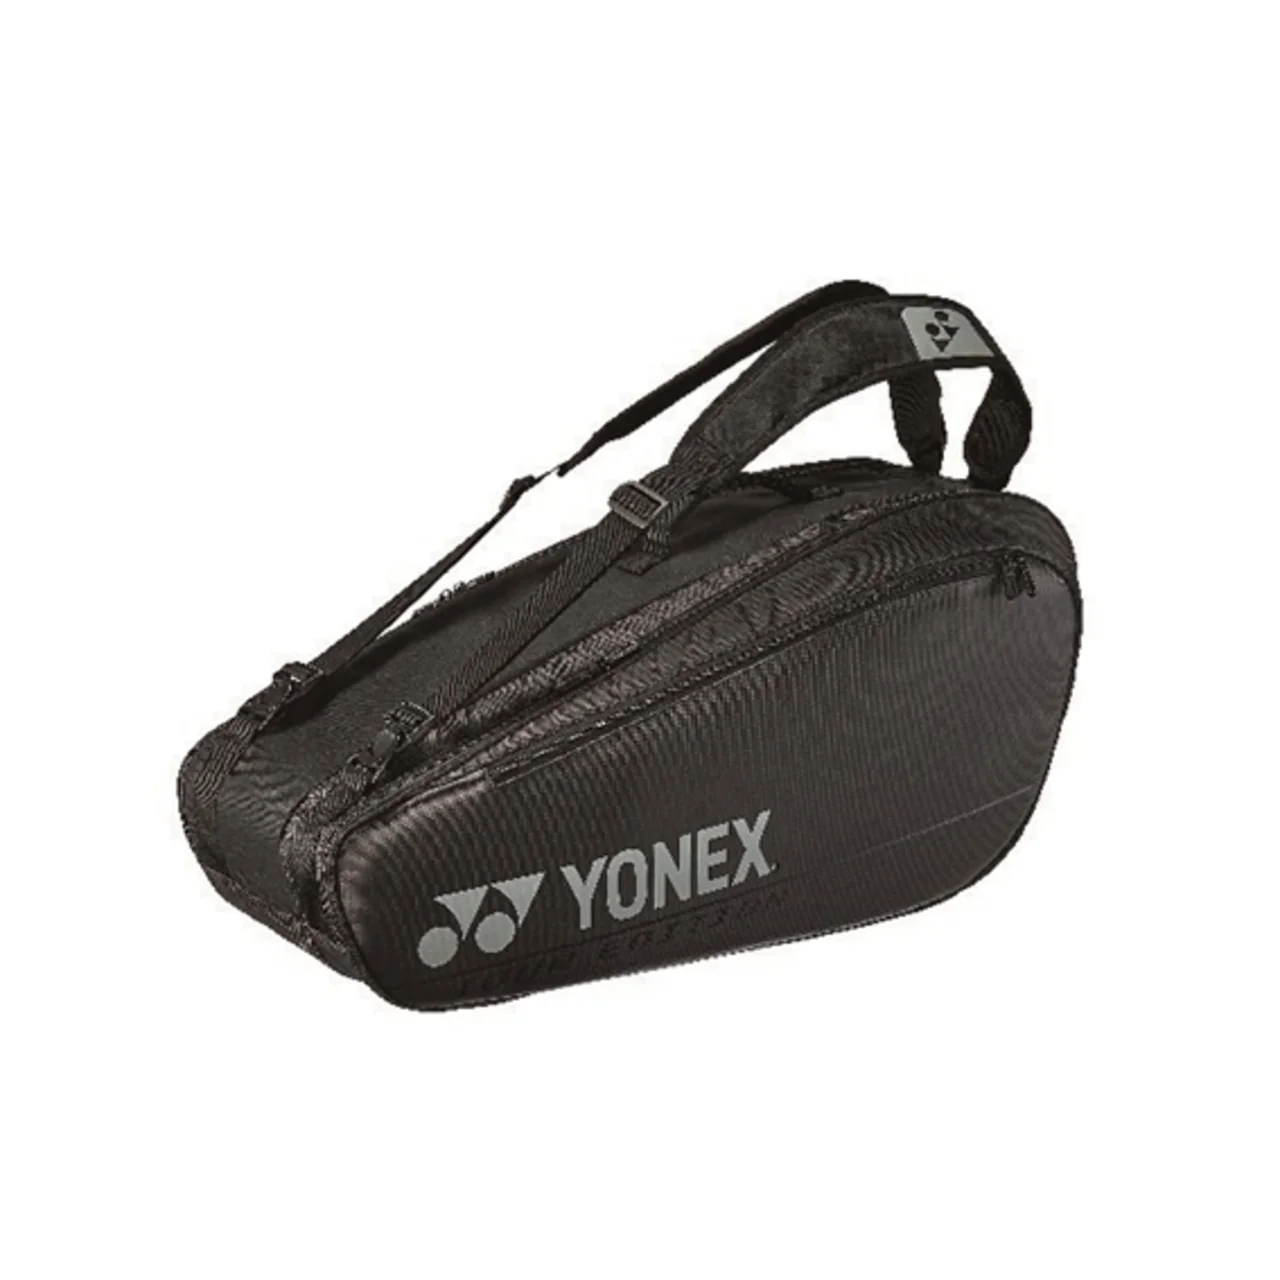 Yonex Pro Bag x6 Black